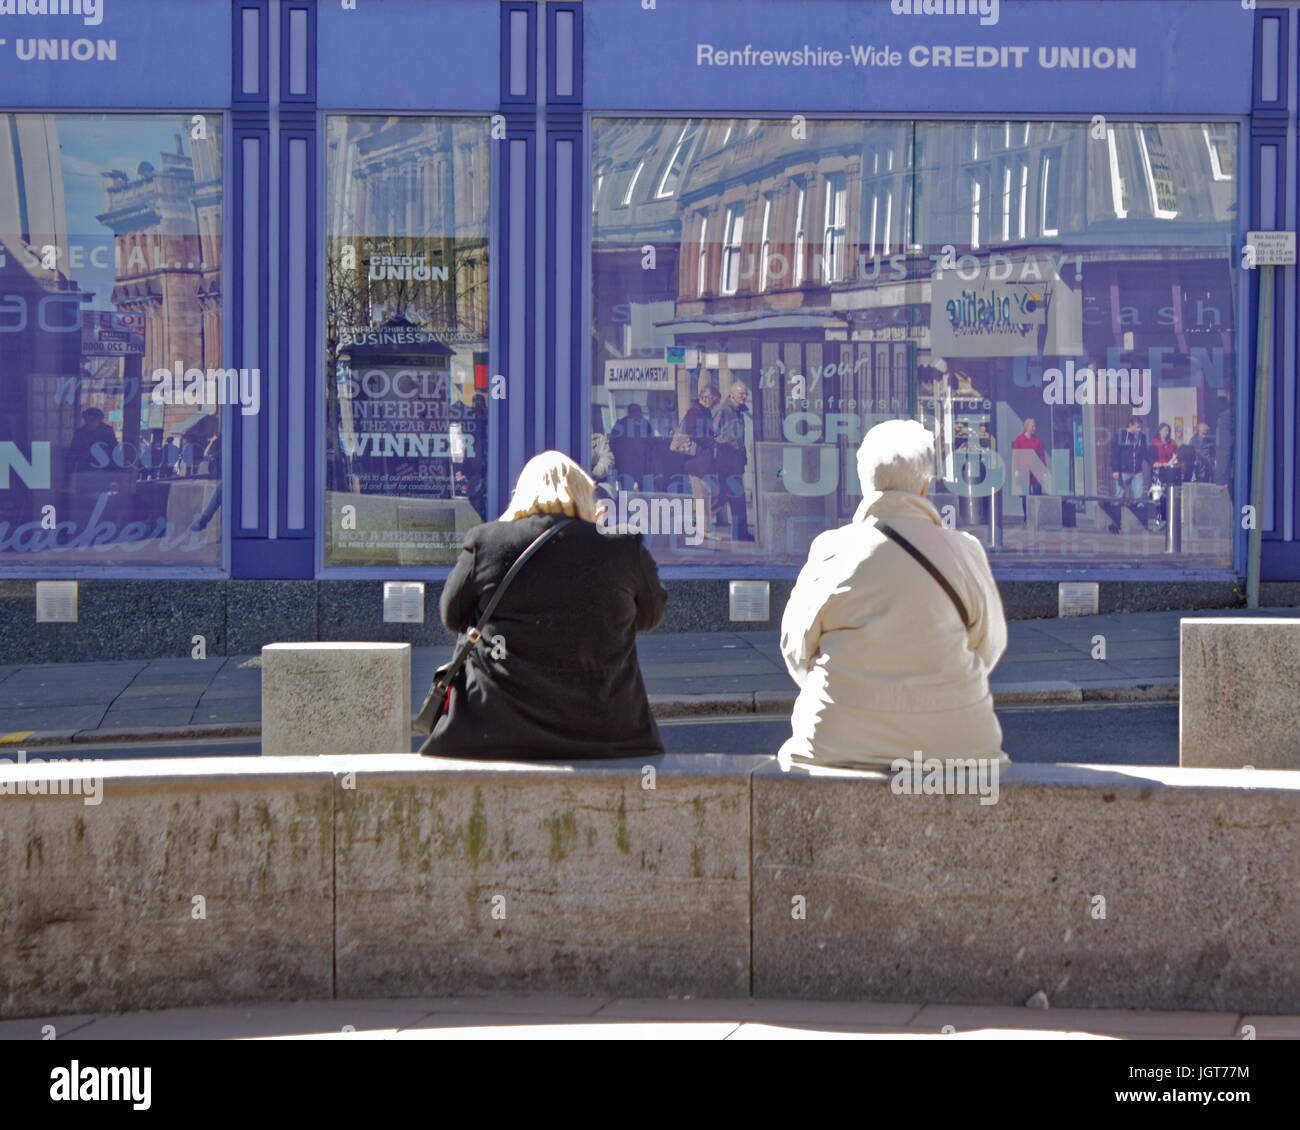 Paisley Scozia buddies su un banco in un posto molto soleggiato giorno, la high street di fronte al locale unione di credito Foto Stock